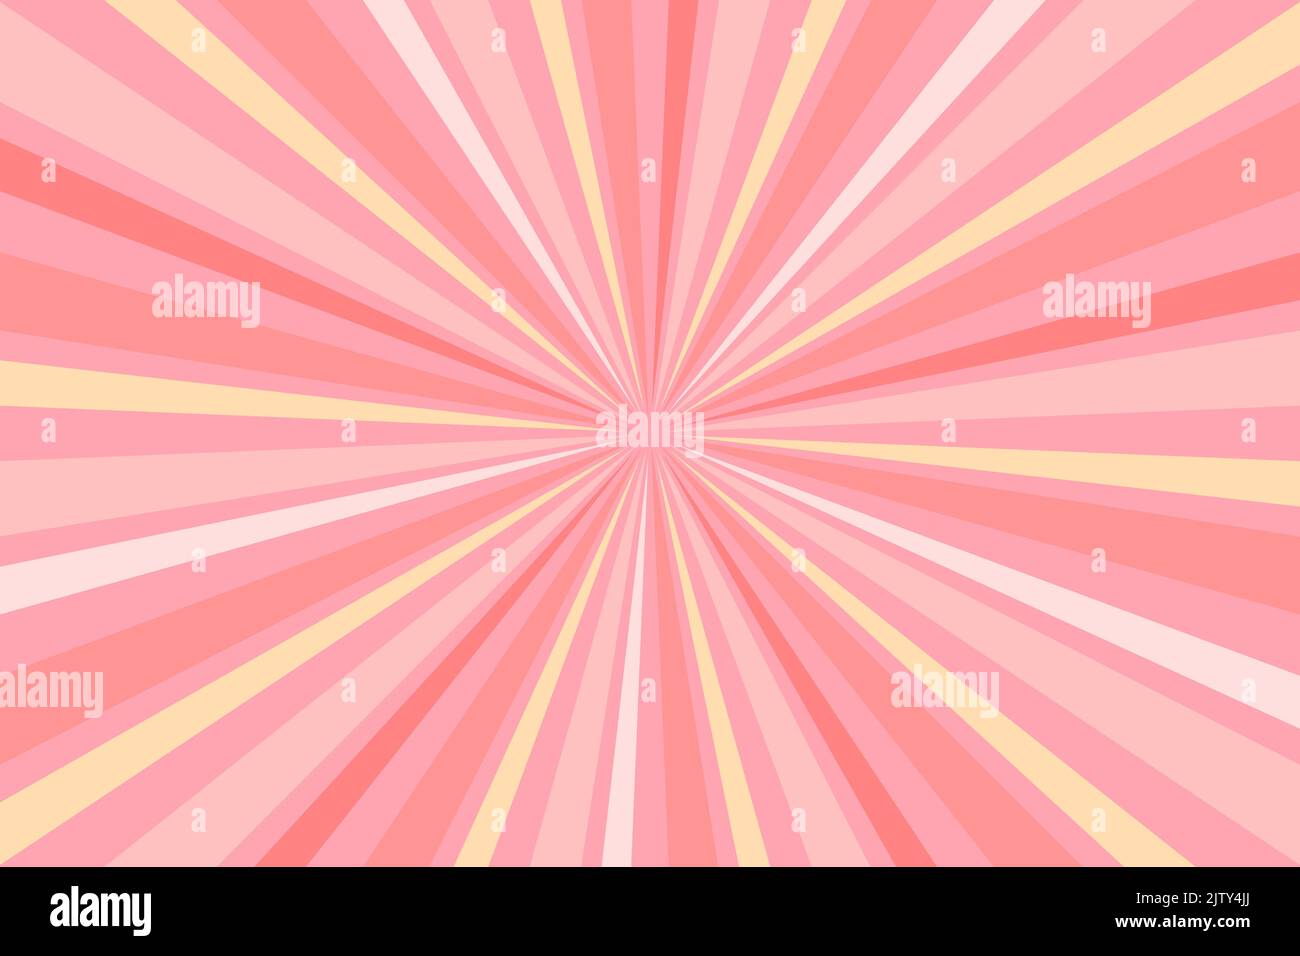 Sunburst geometrische Ray Stern Hintergrund mit trendigen Pastellfarben. Rosa und beige Farben. Vektorgrafik Stock Vektor